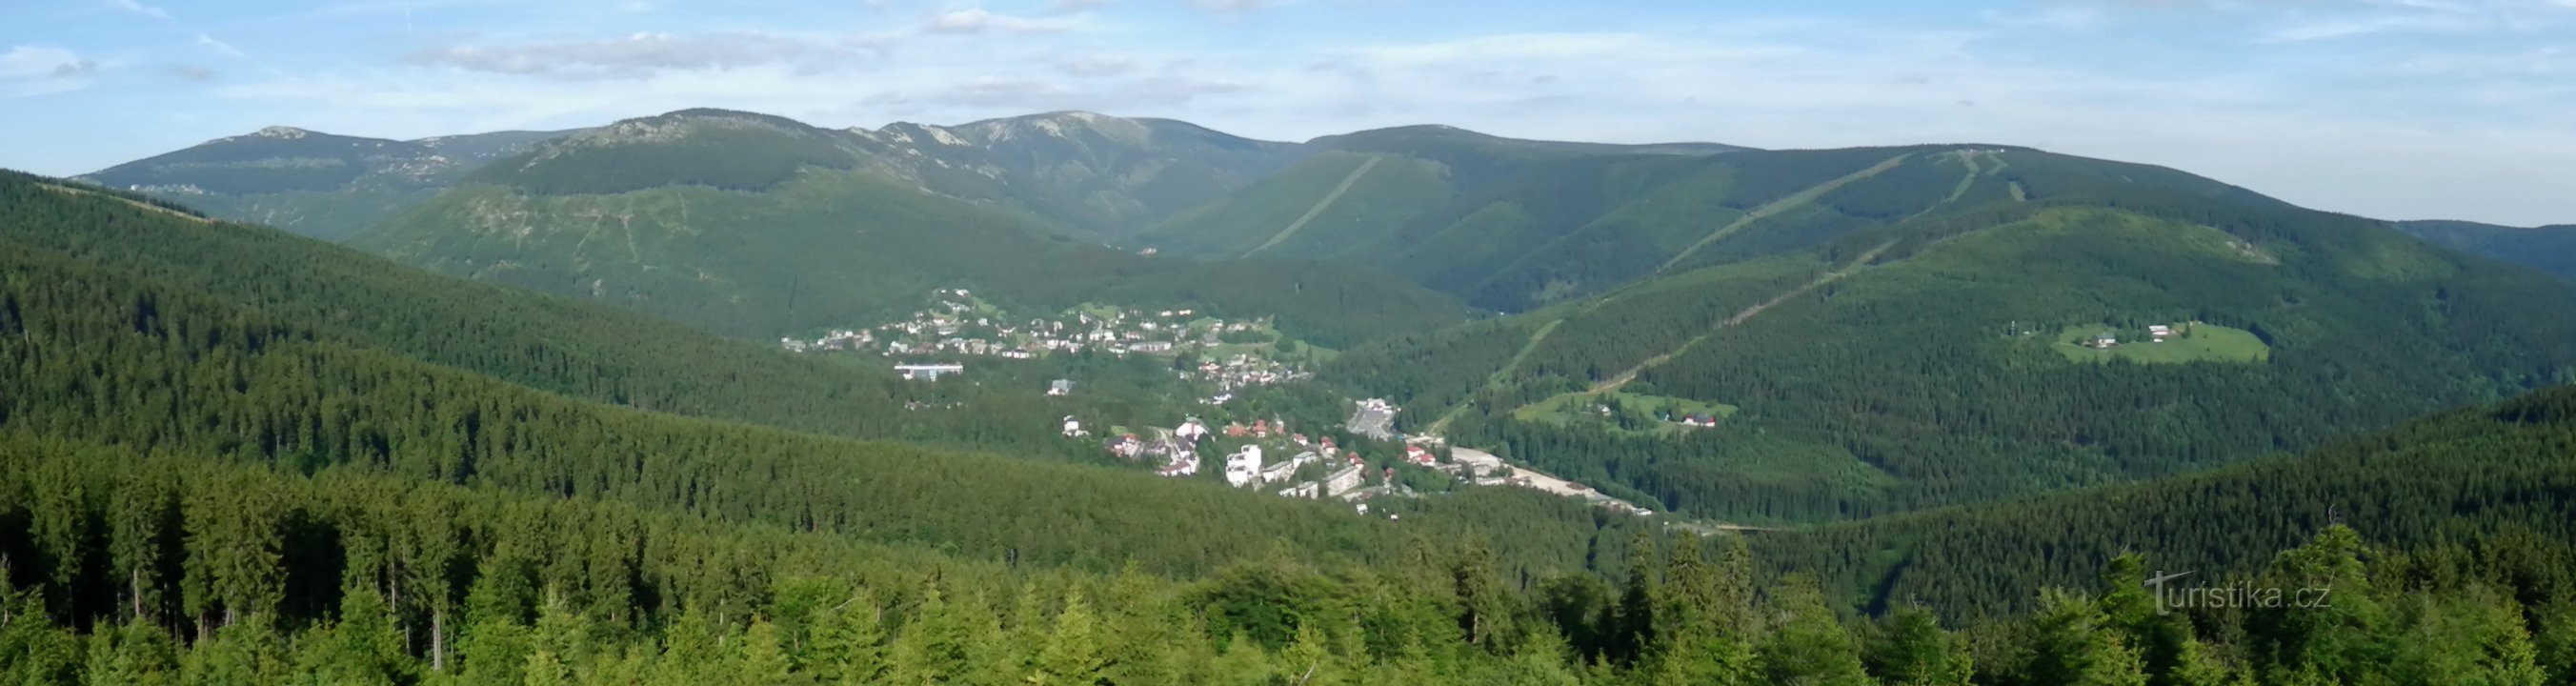 Vista panorámica desde la roca de Harrach (desde Malé Špičák hasta Hromovka), abajo